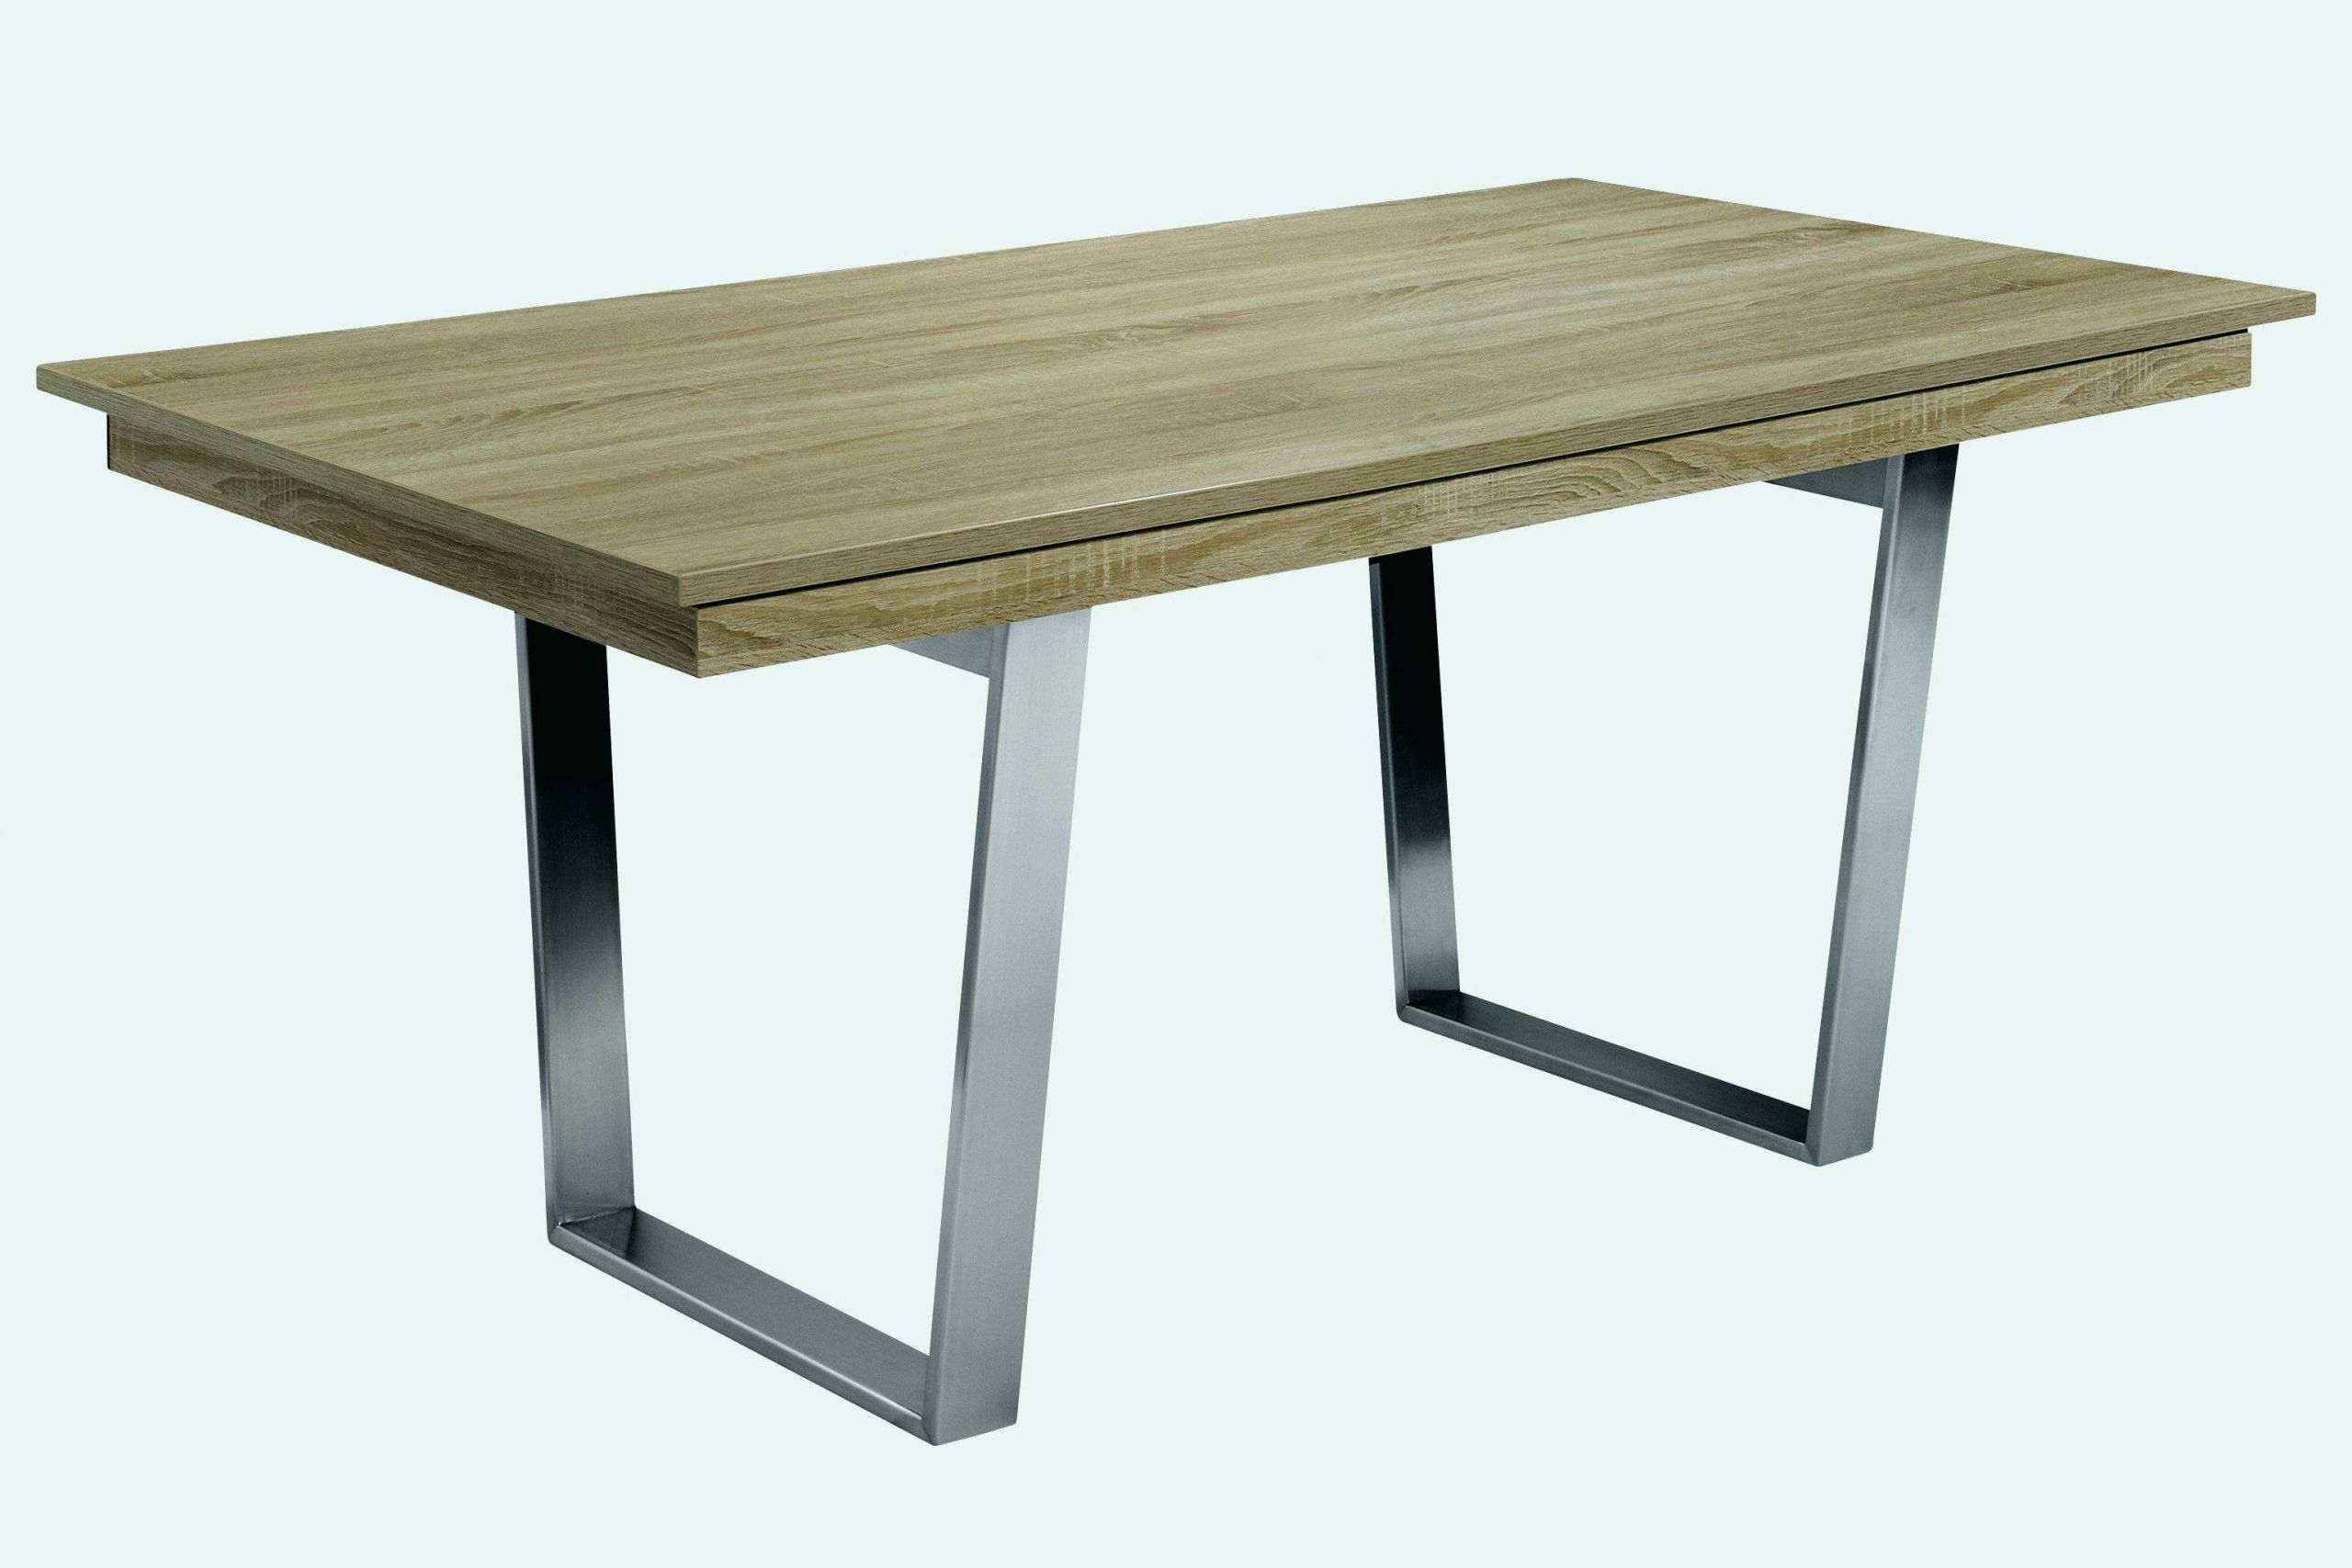 Bauideen Holz Schön Tisch Rund Holz Reizend Esstisch Rund 80 Cm Ehrfürchtig